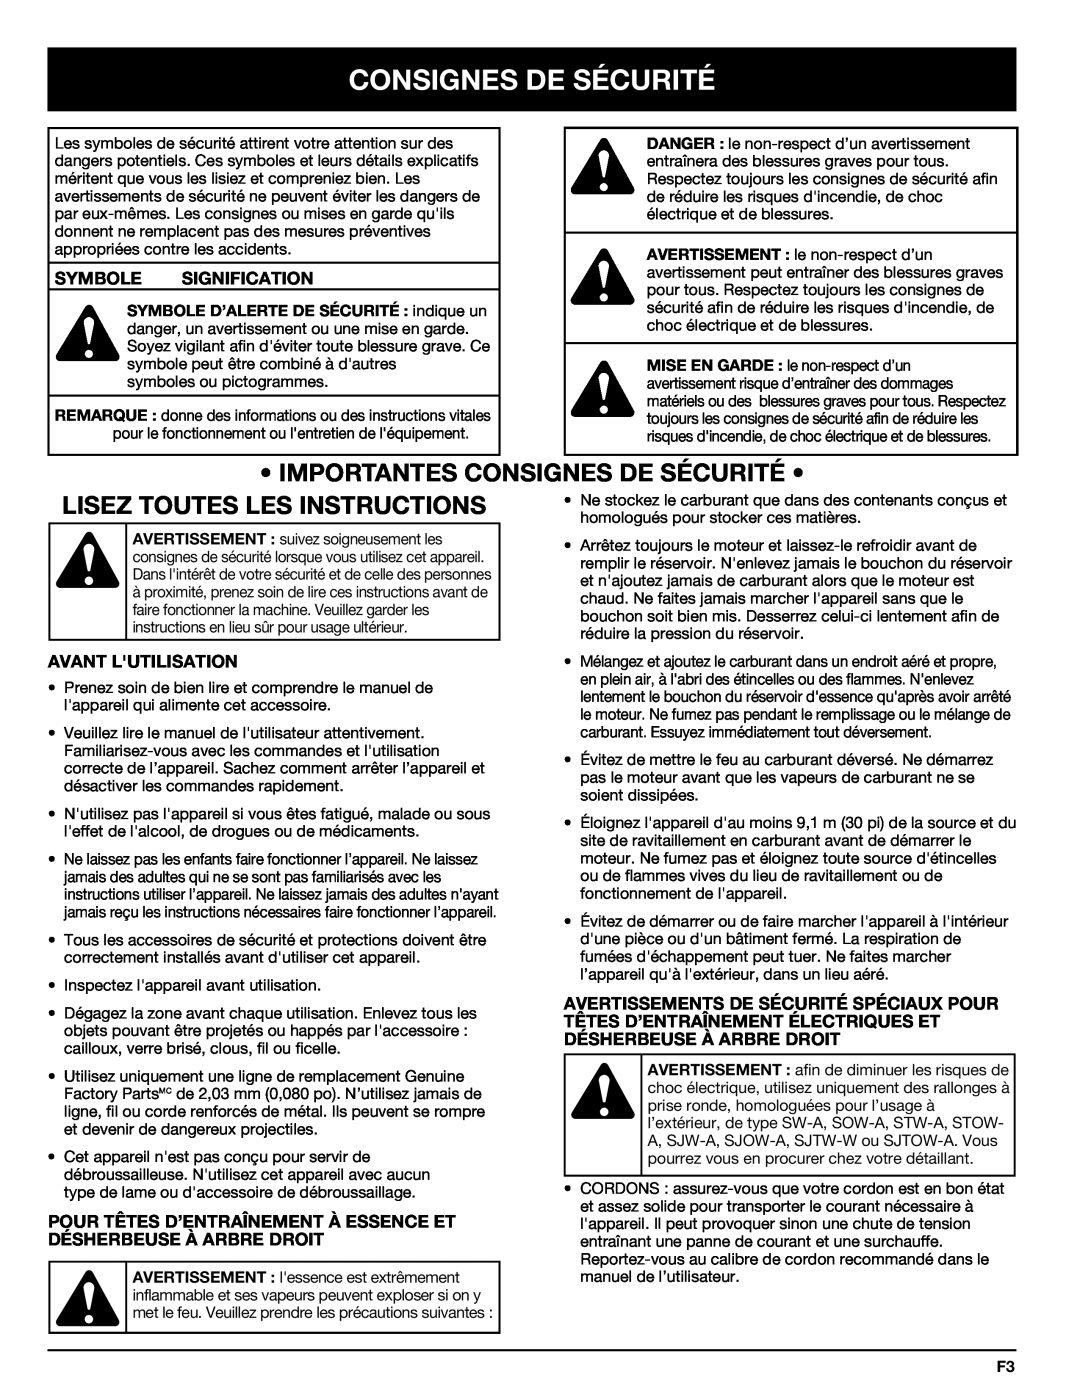 Troy-Bilt 769-00425A manual Importantes Consignes De Sécurité, Lisez Toutes Les Instructions, Symbole Signification 